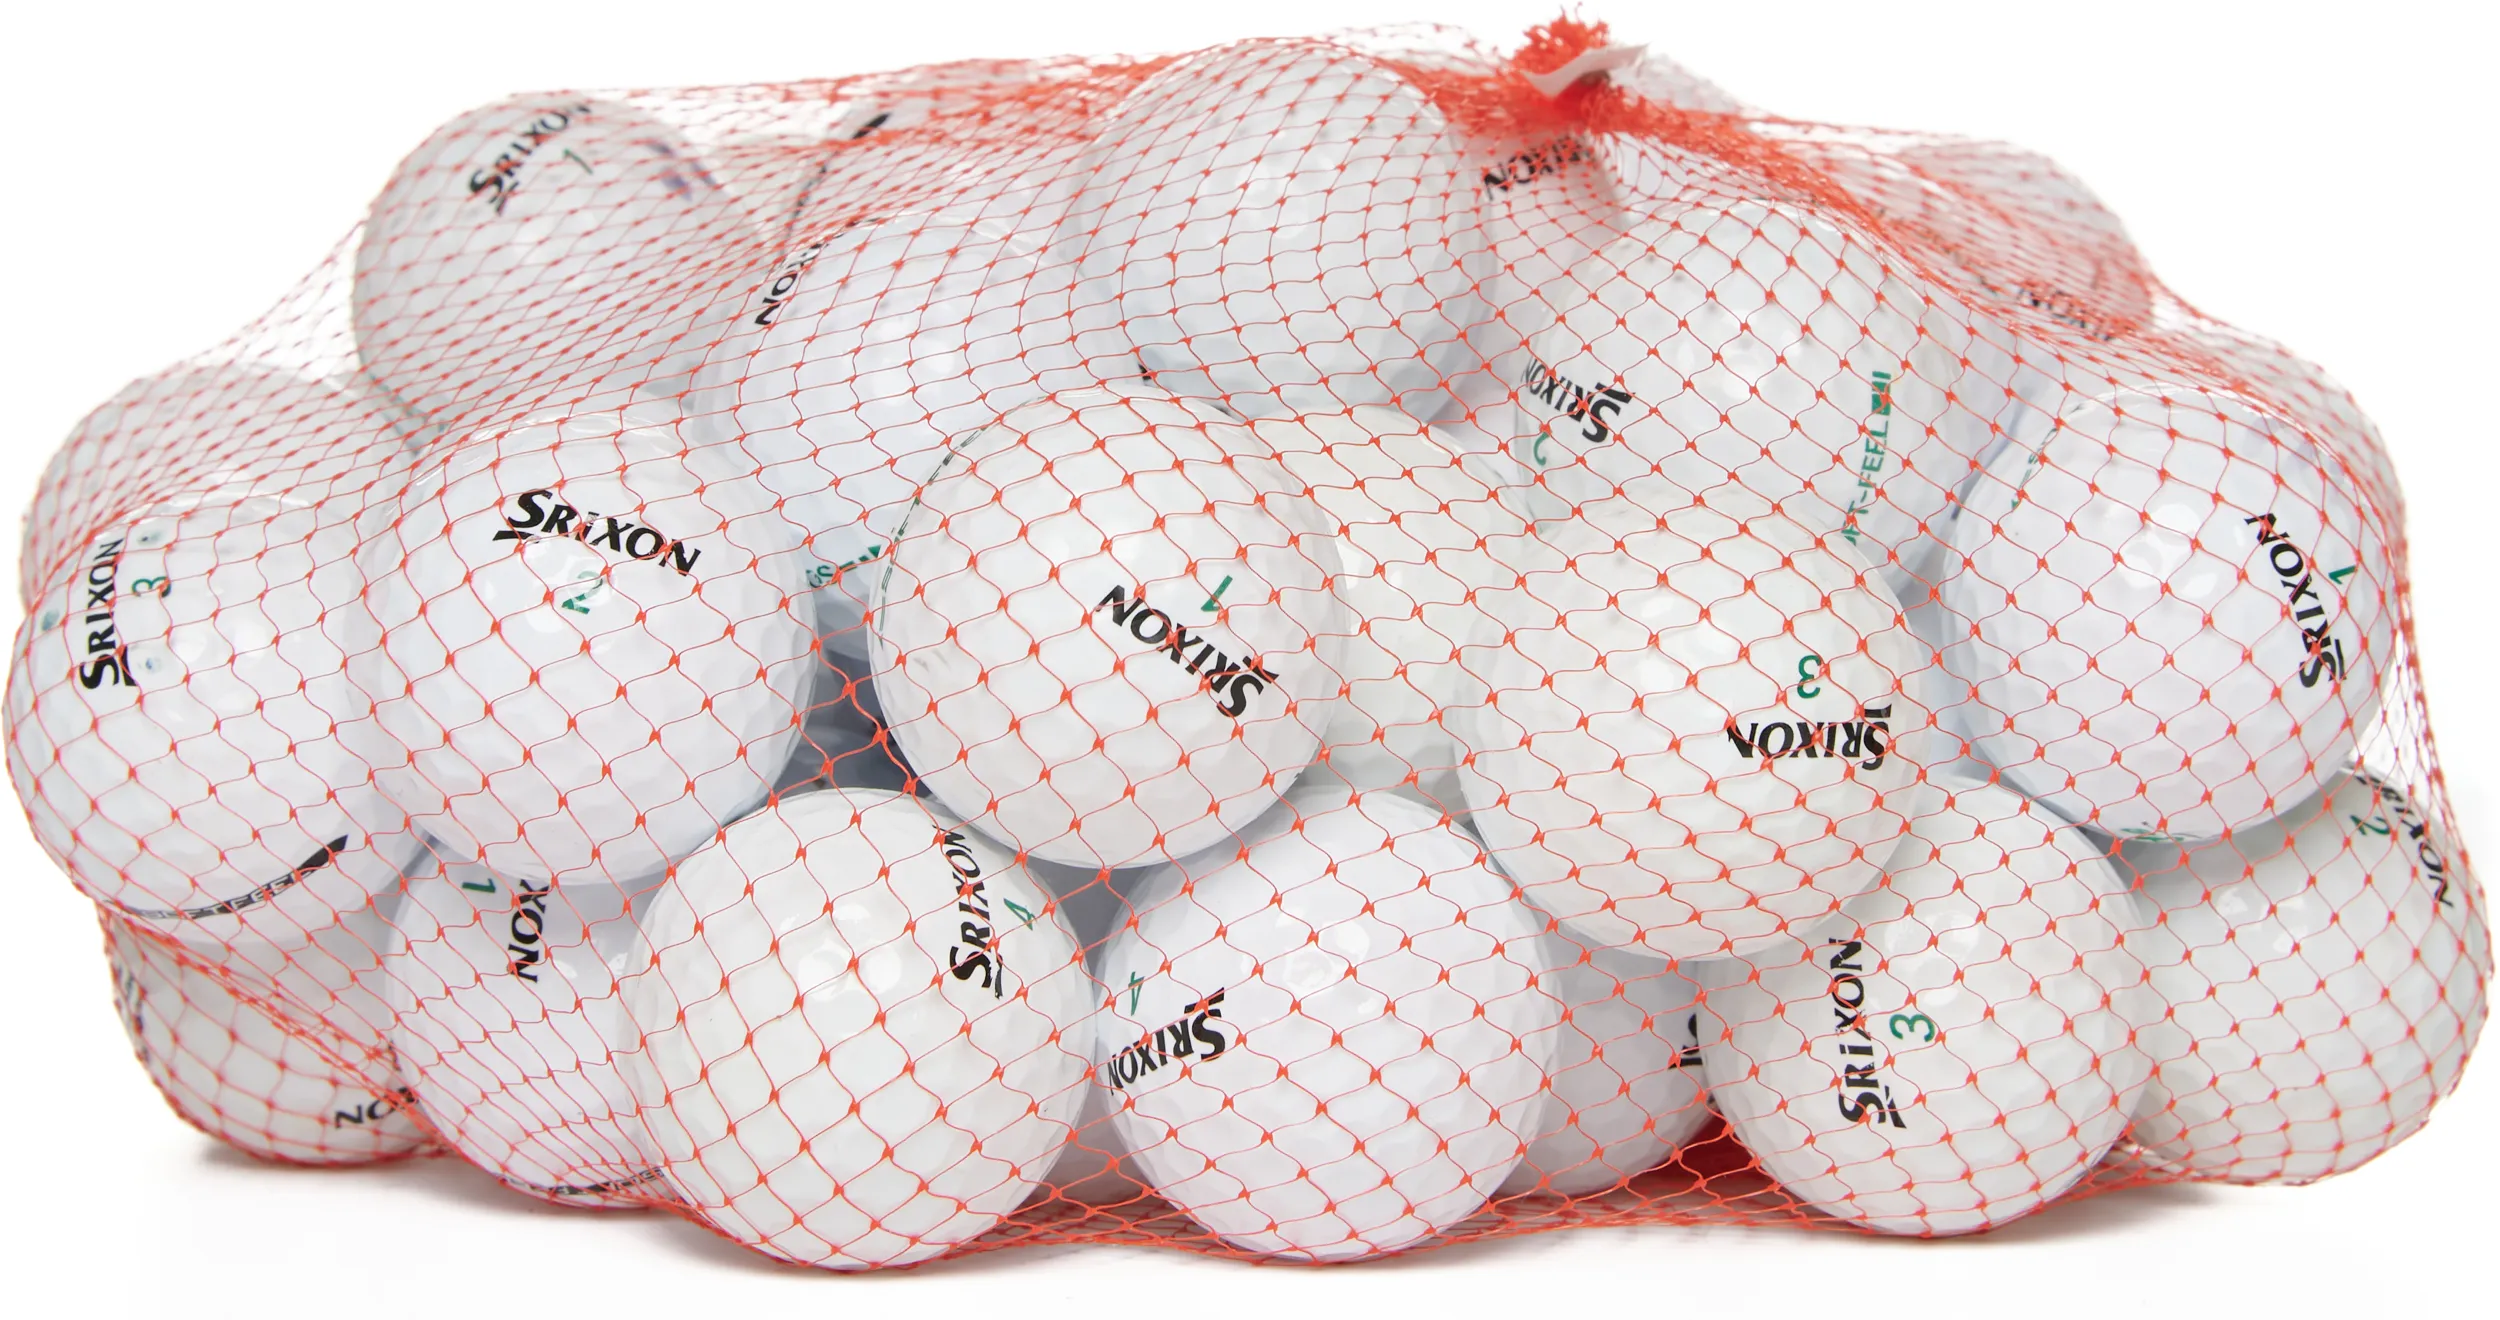 50 Srixon Soft Feel Lakeballs